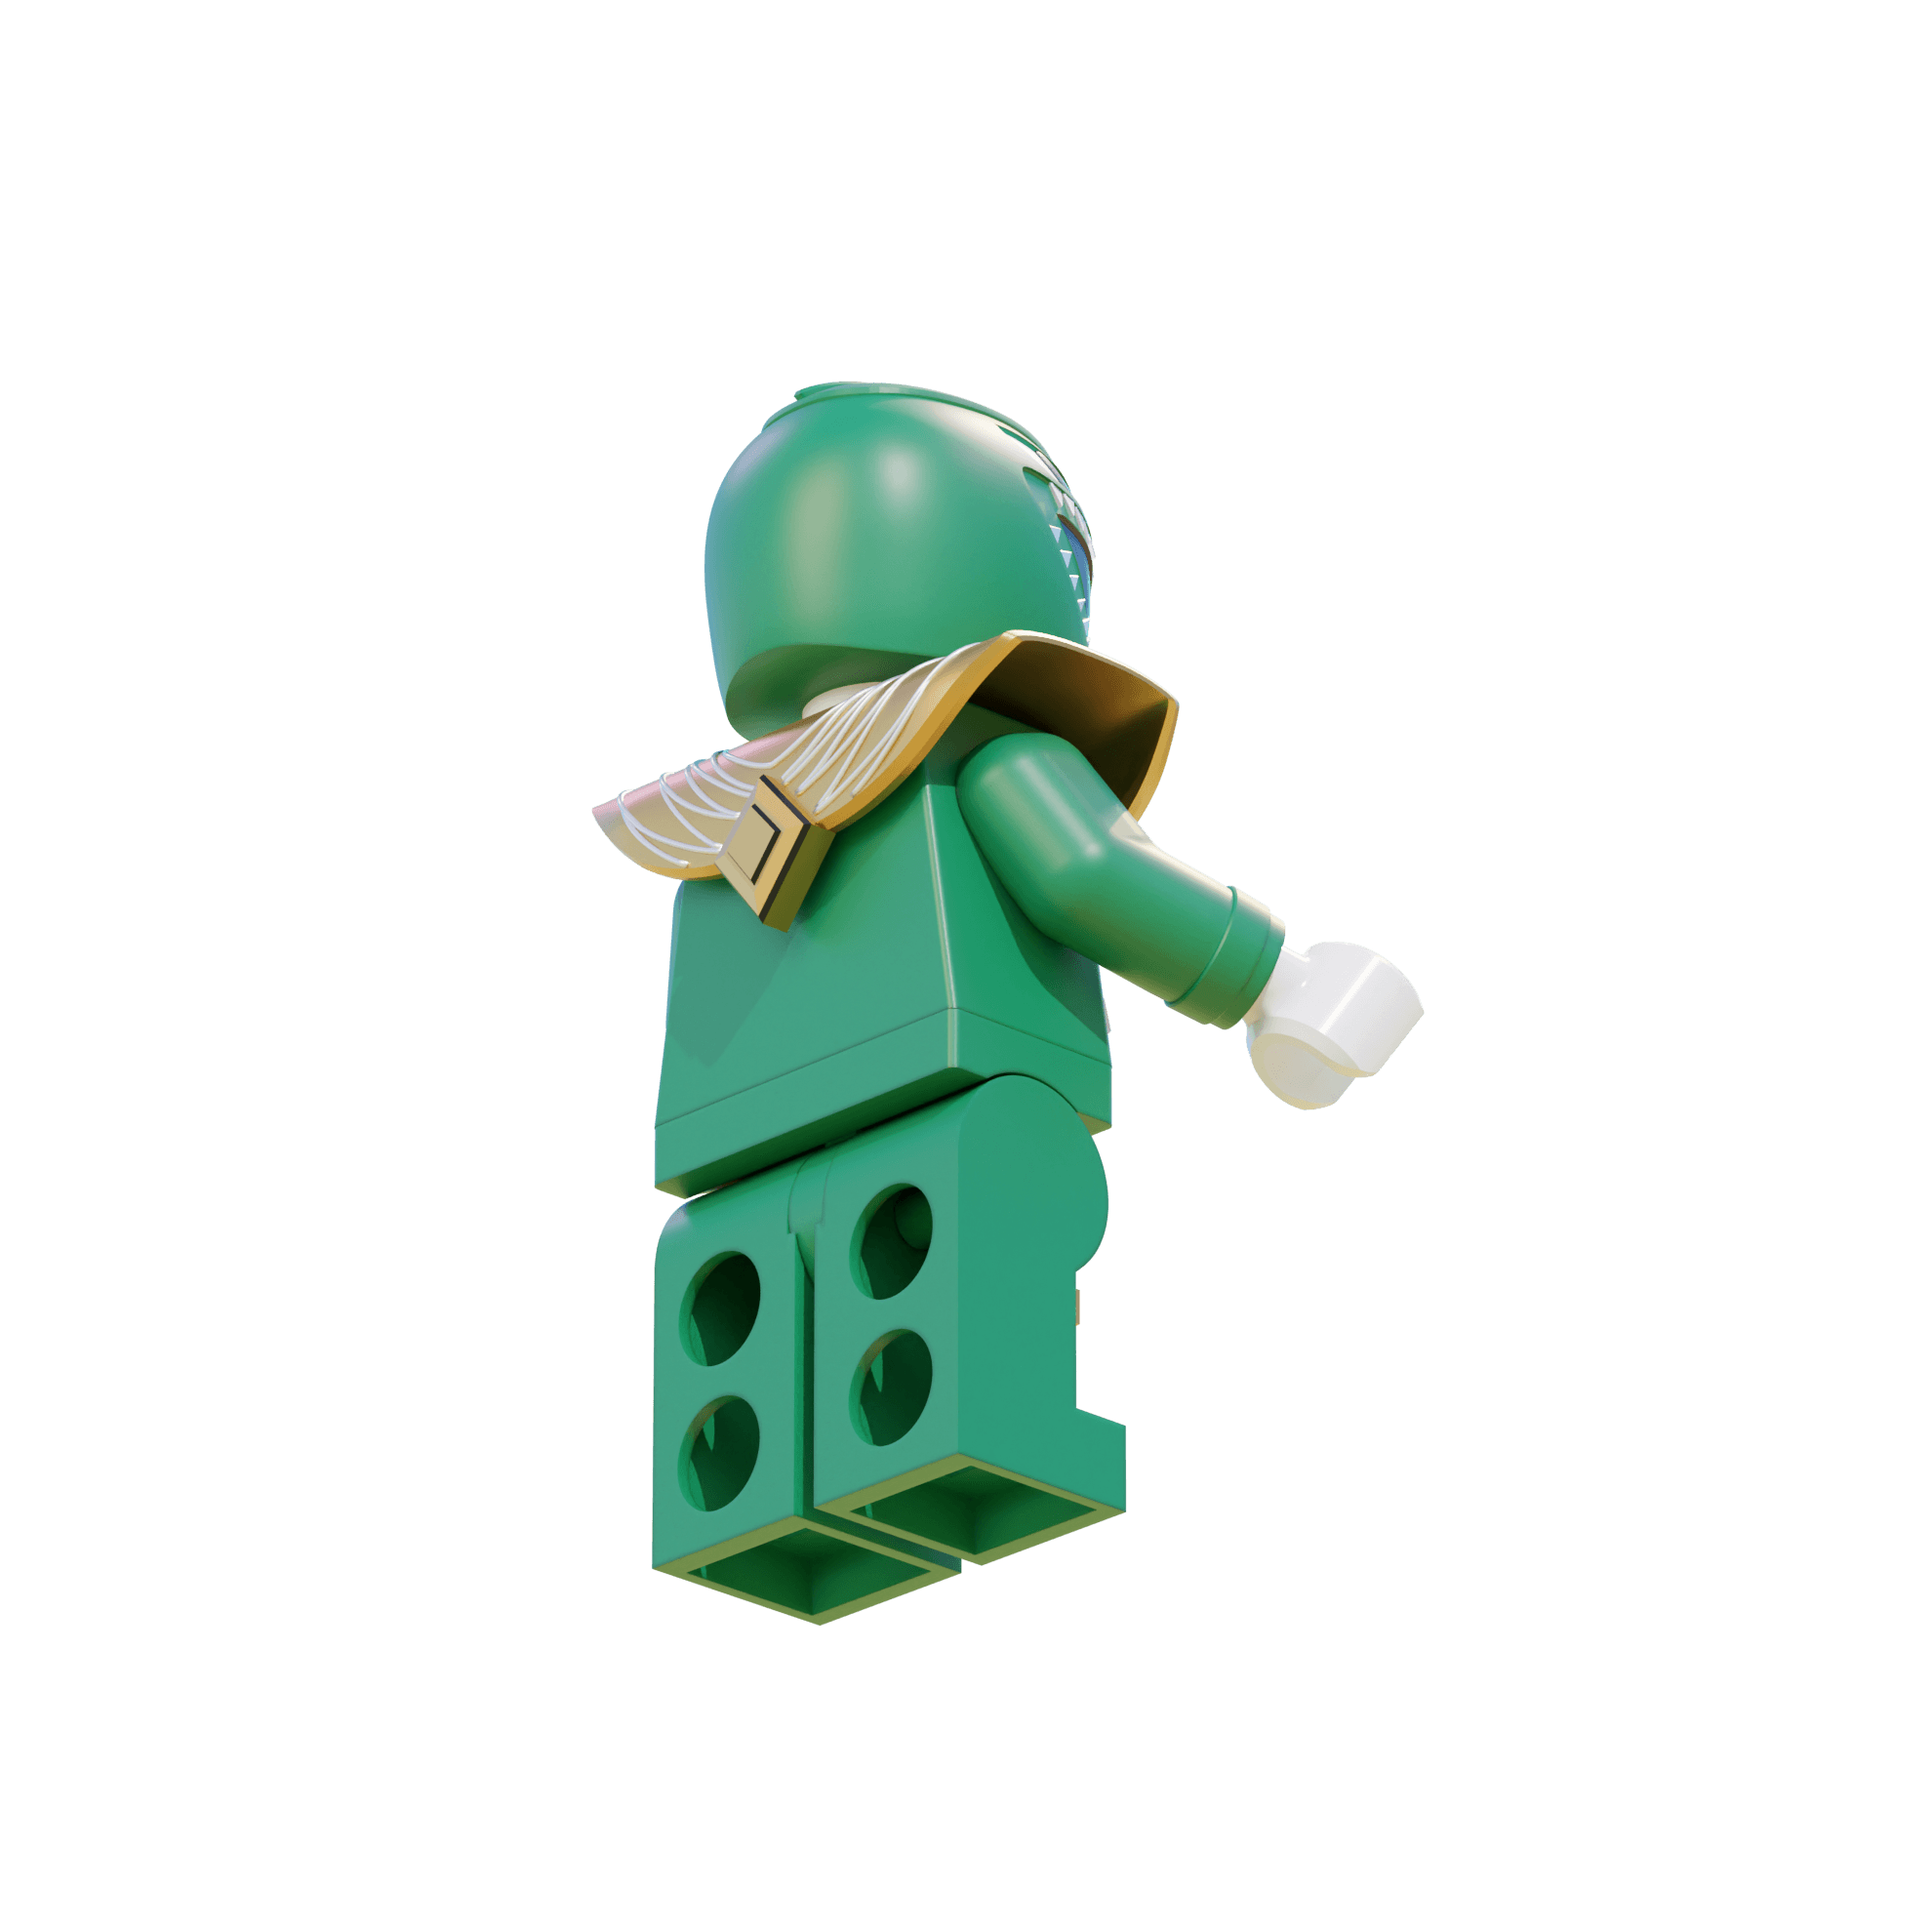 Green Ranger LEGO Figure 3d model